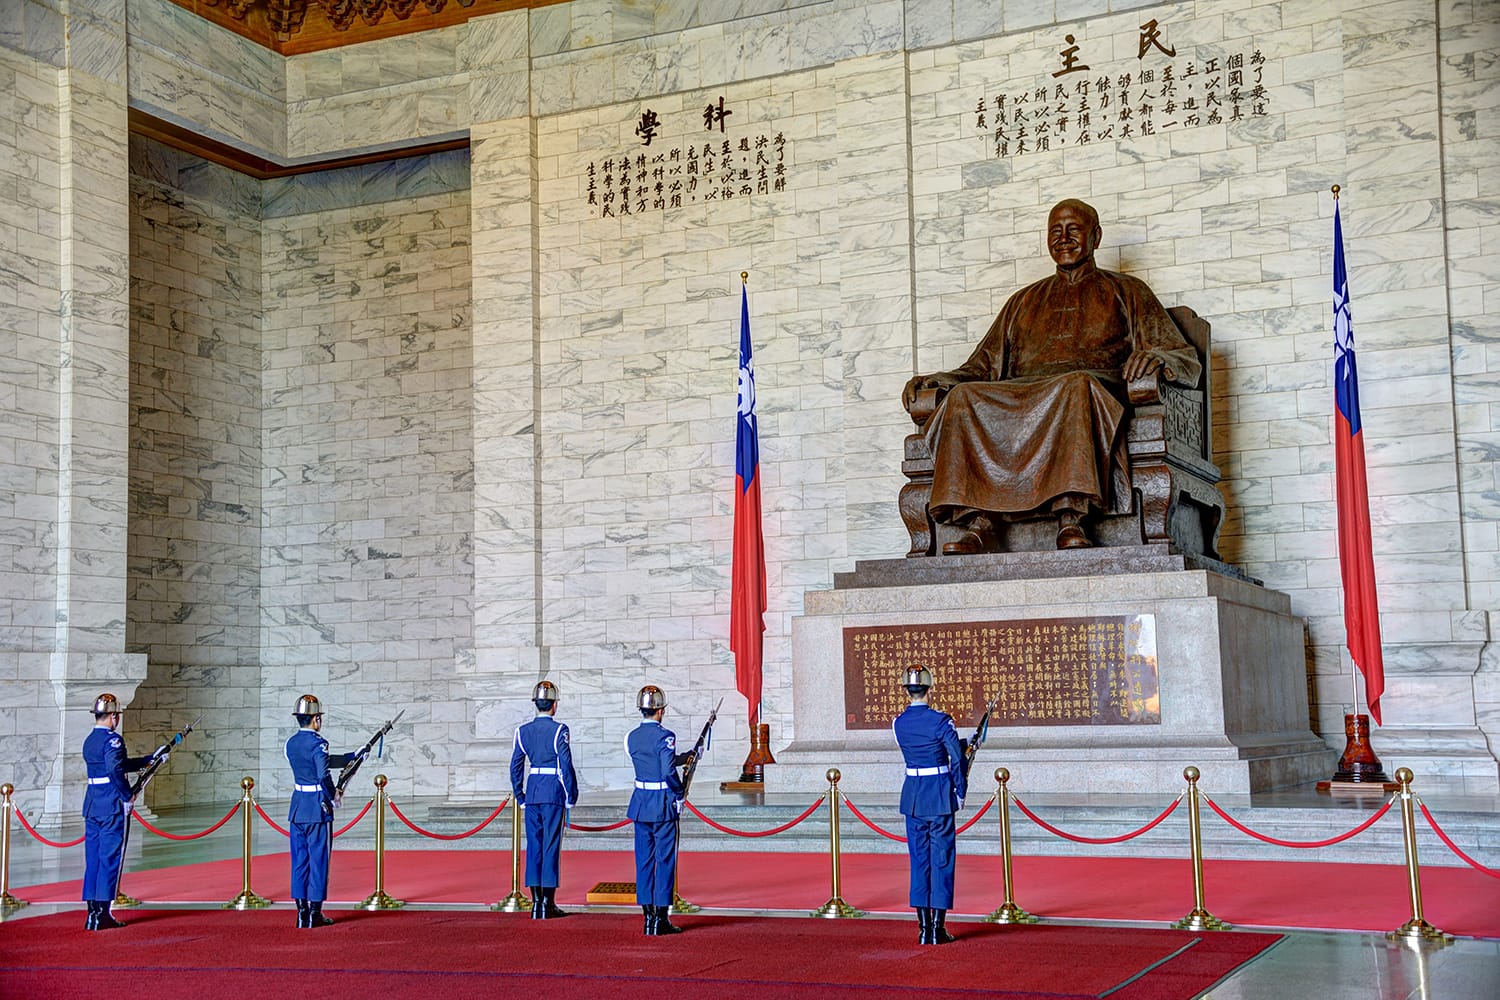 A large bronze statue of Chiang Kai-shek in Taipei, Taiwan.